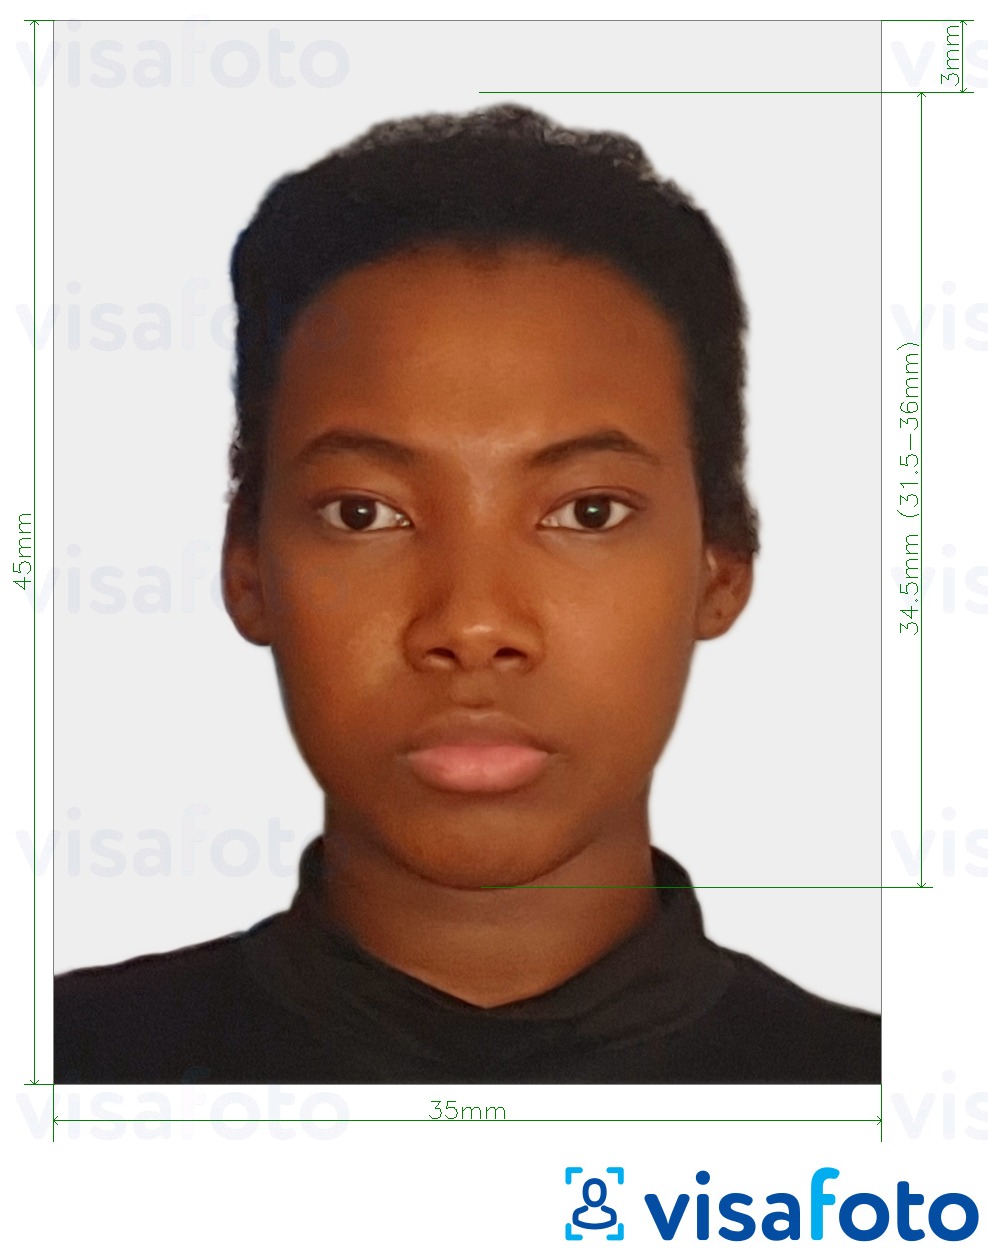 Exemplu de fotografie pentru Surinam pașaport 45x35 mm (1,77x1,37 inch) cu aceeași dimensiune indicată